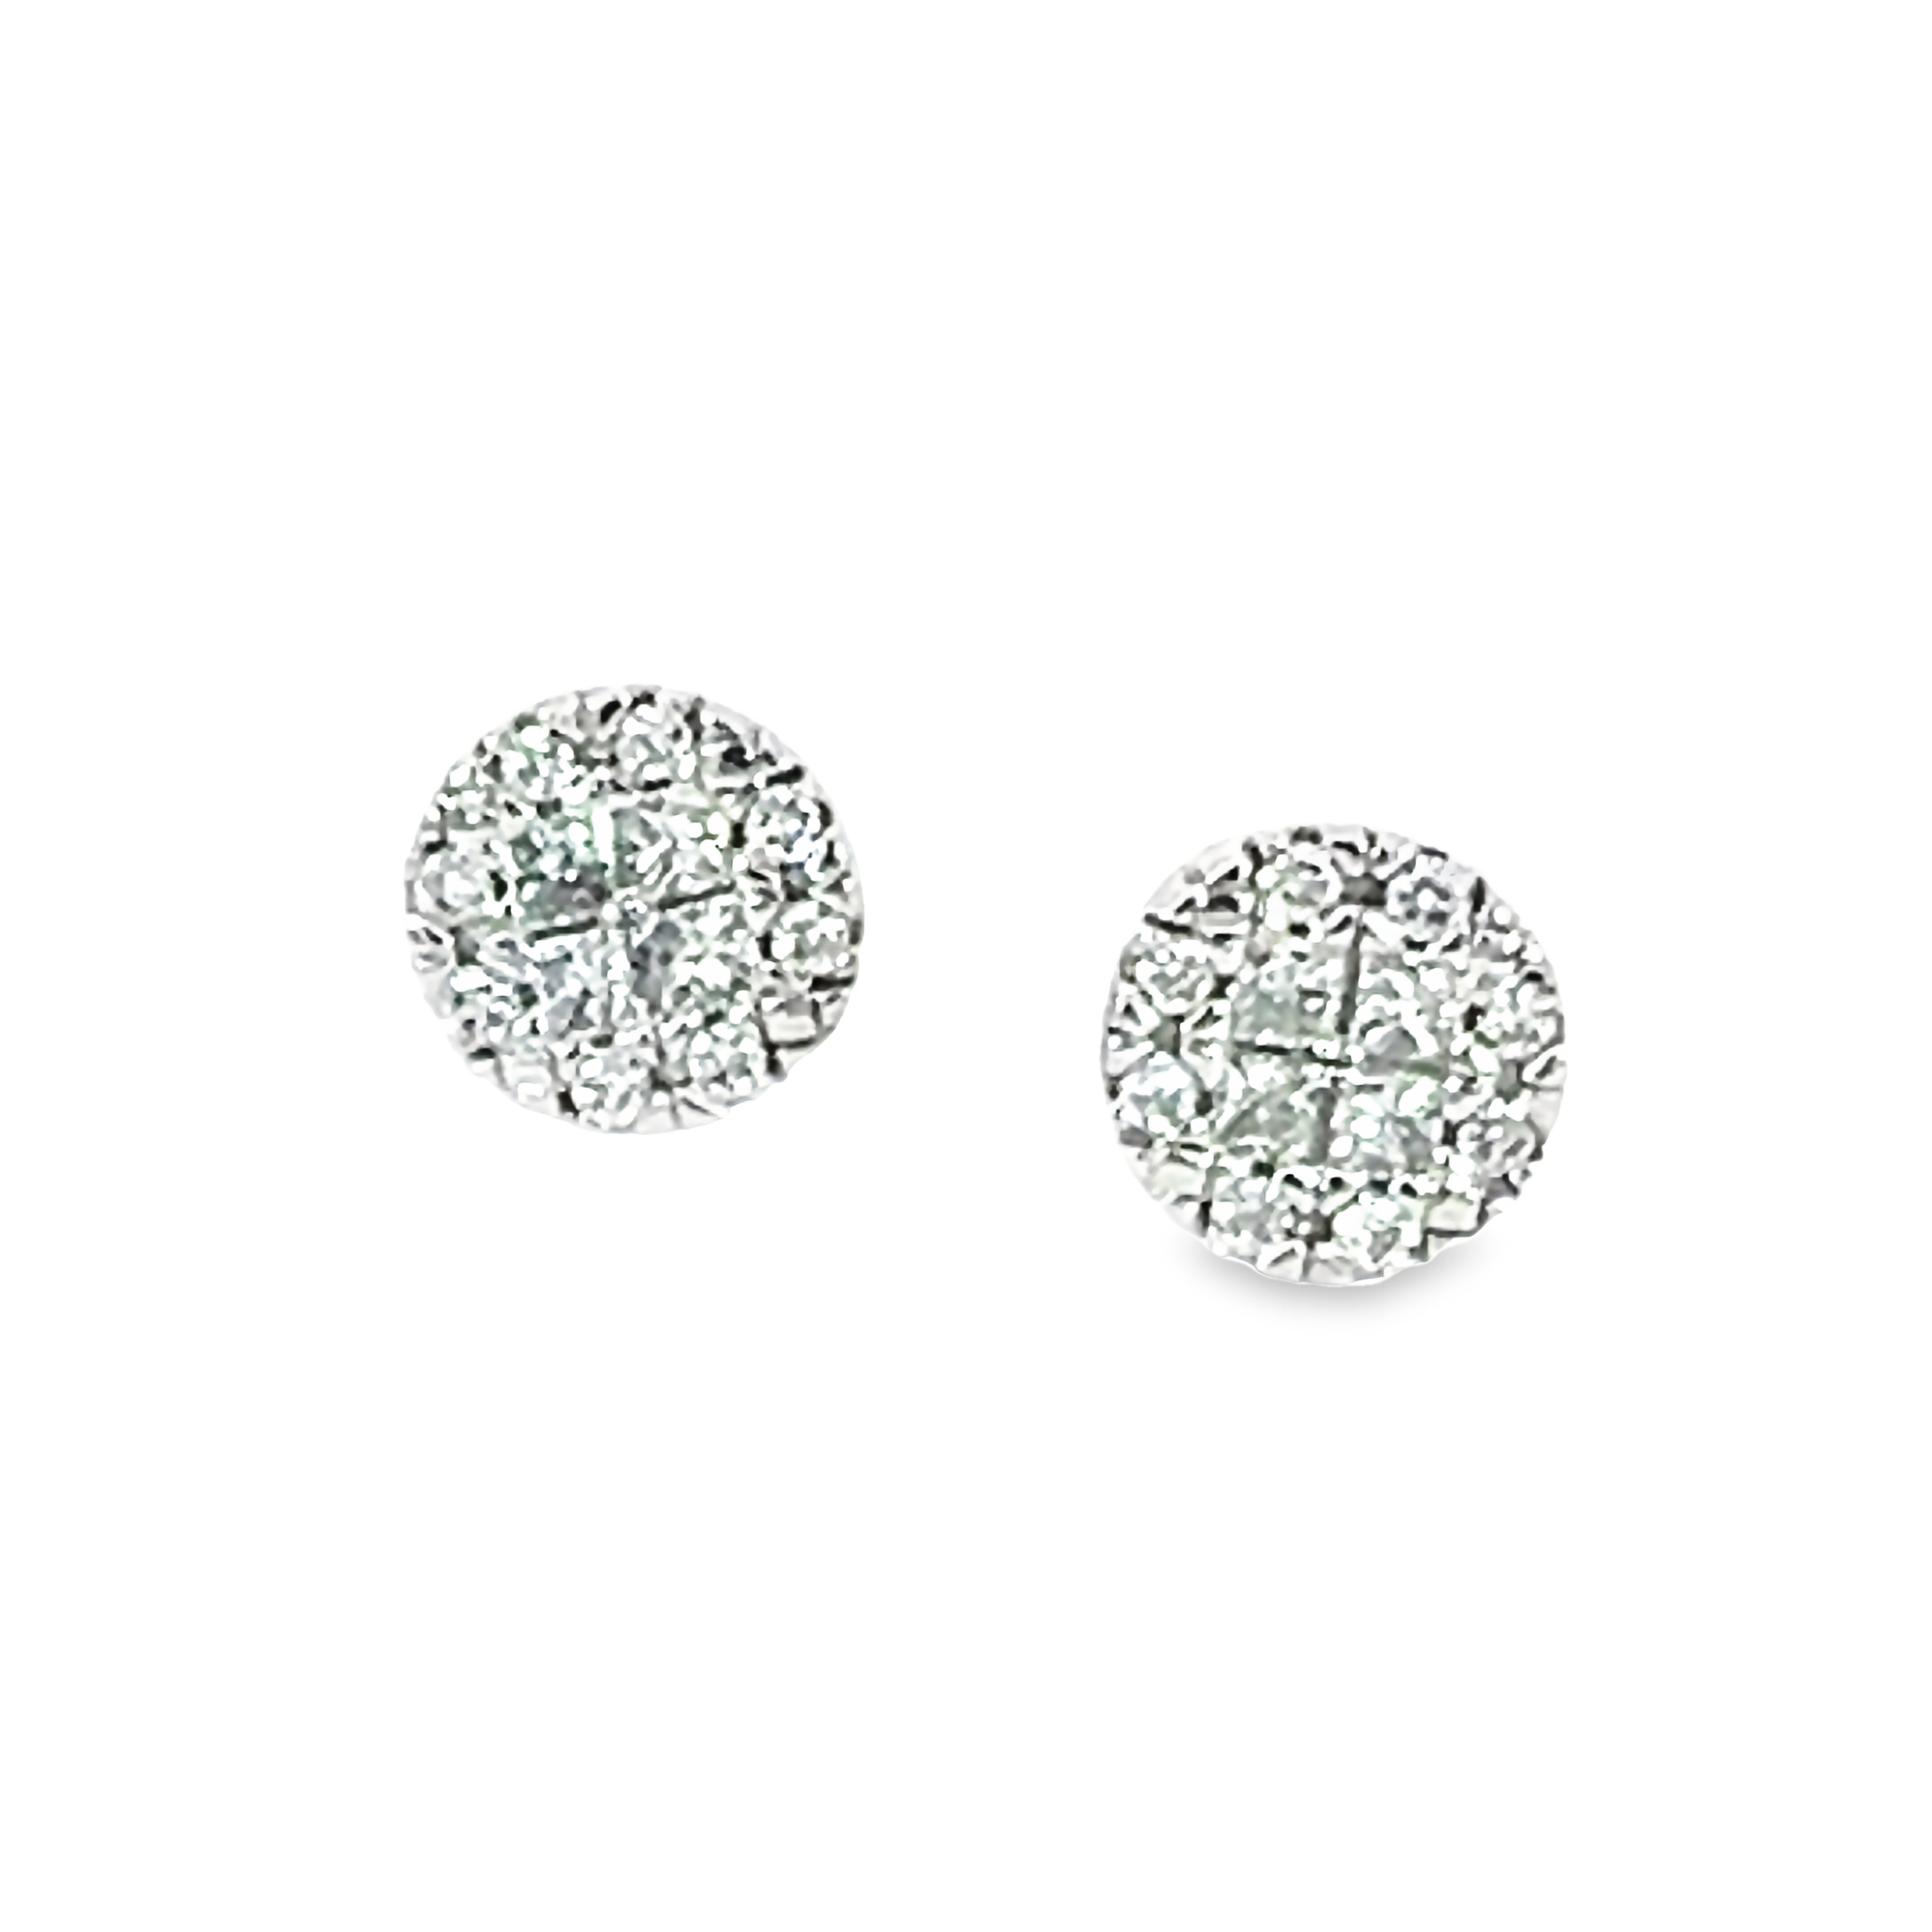 14k White Gold Diamond Cluster Stud Earrings